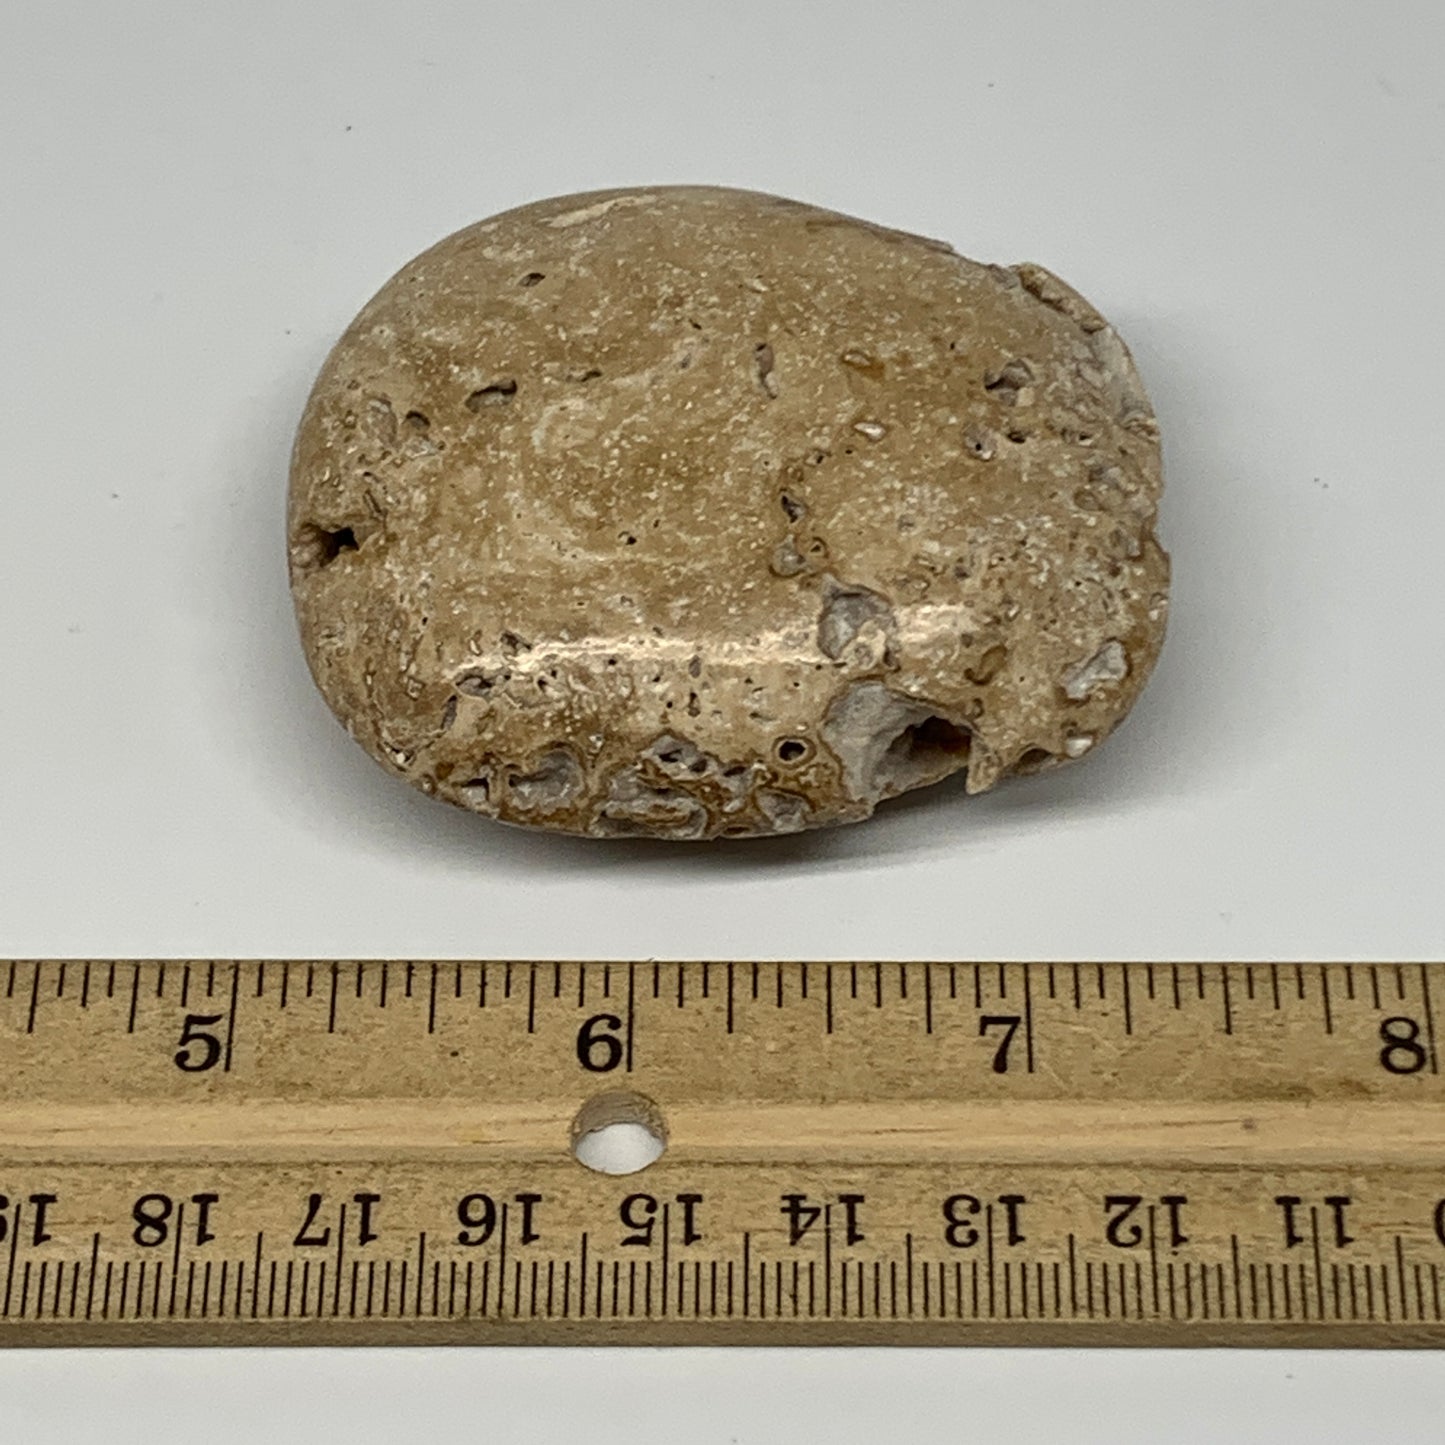 83.6g, 2.3"x2"x0.9", Chocolate Calcite Palm-Stone Reiki @Afghanistan, B14713